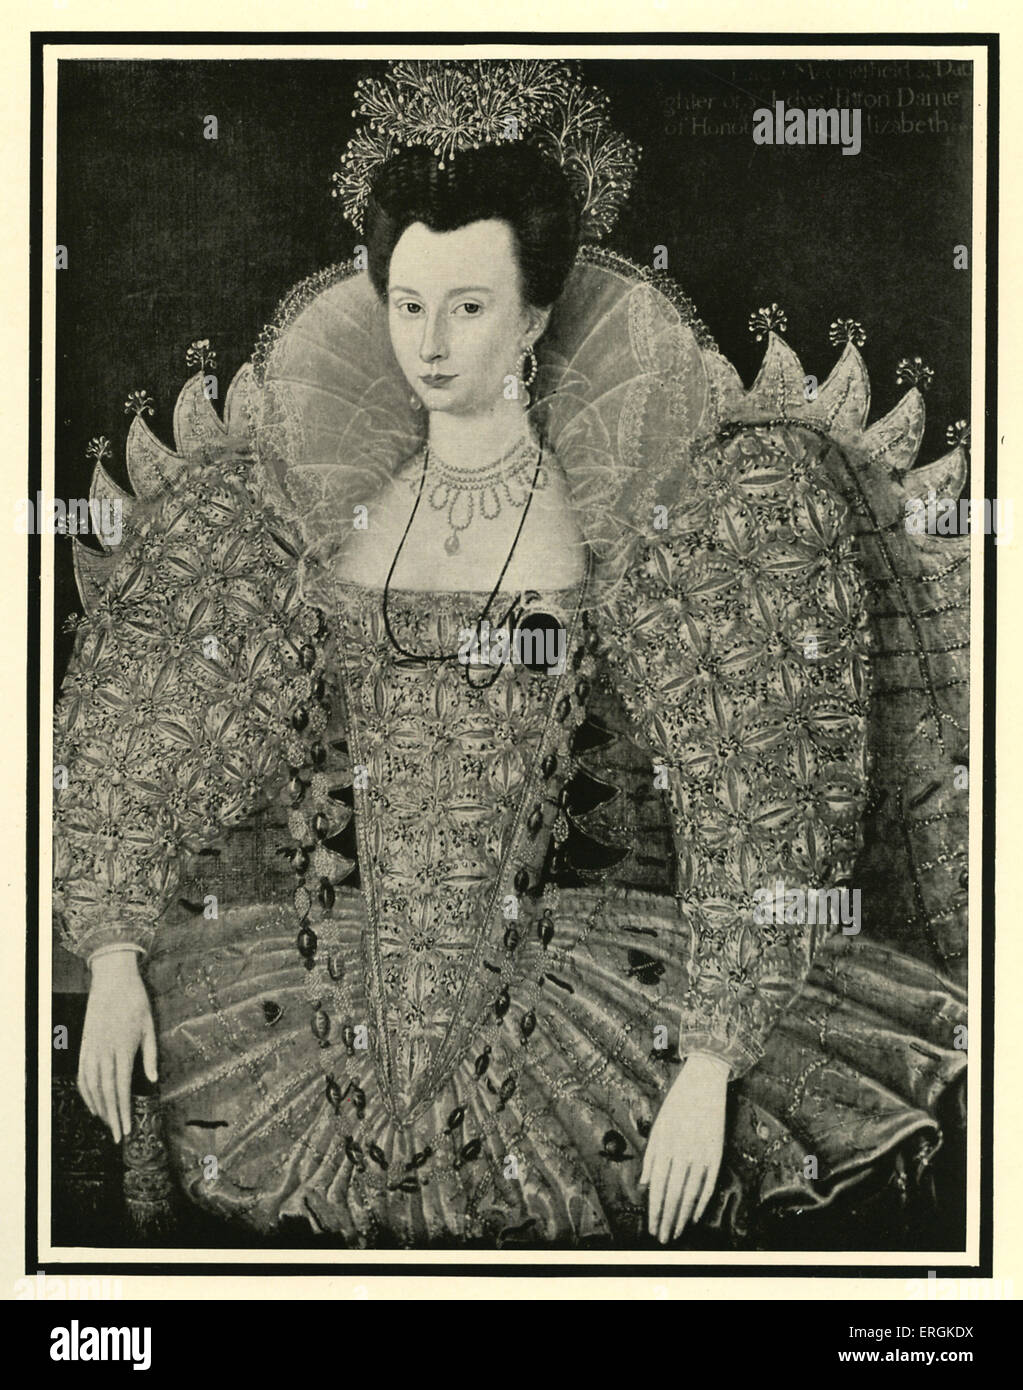 Heiraten Sie Fitton (1578-1647), nach einem Gemälde im Jahre 1596 abgeschlossen. Fitton wird manchmal als die "Dark Lady" von Shakespeares Sonetten anerkannt. Stockfoto